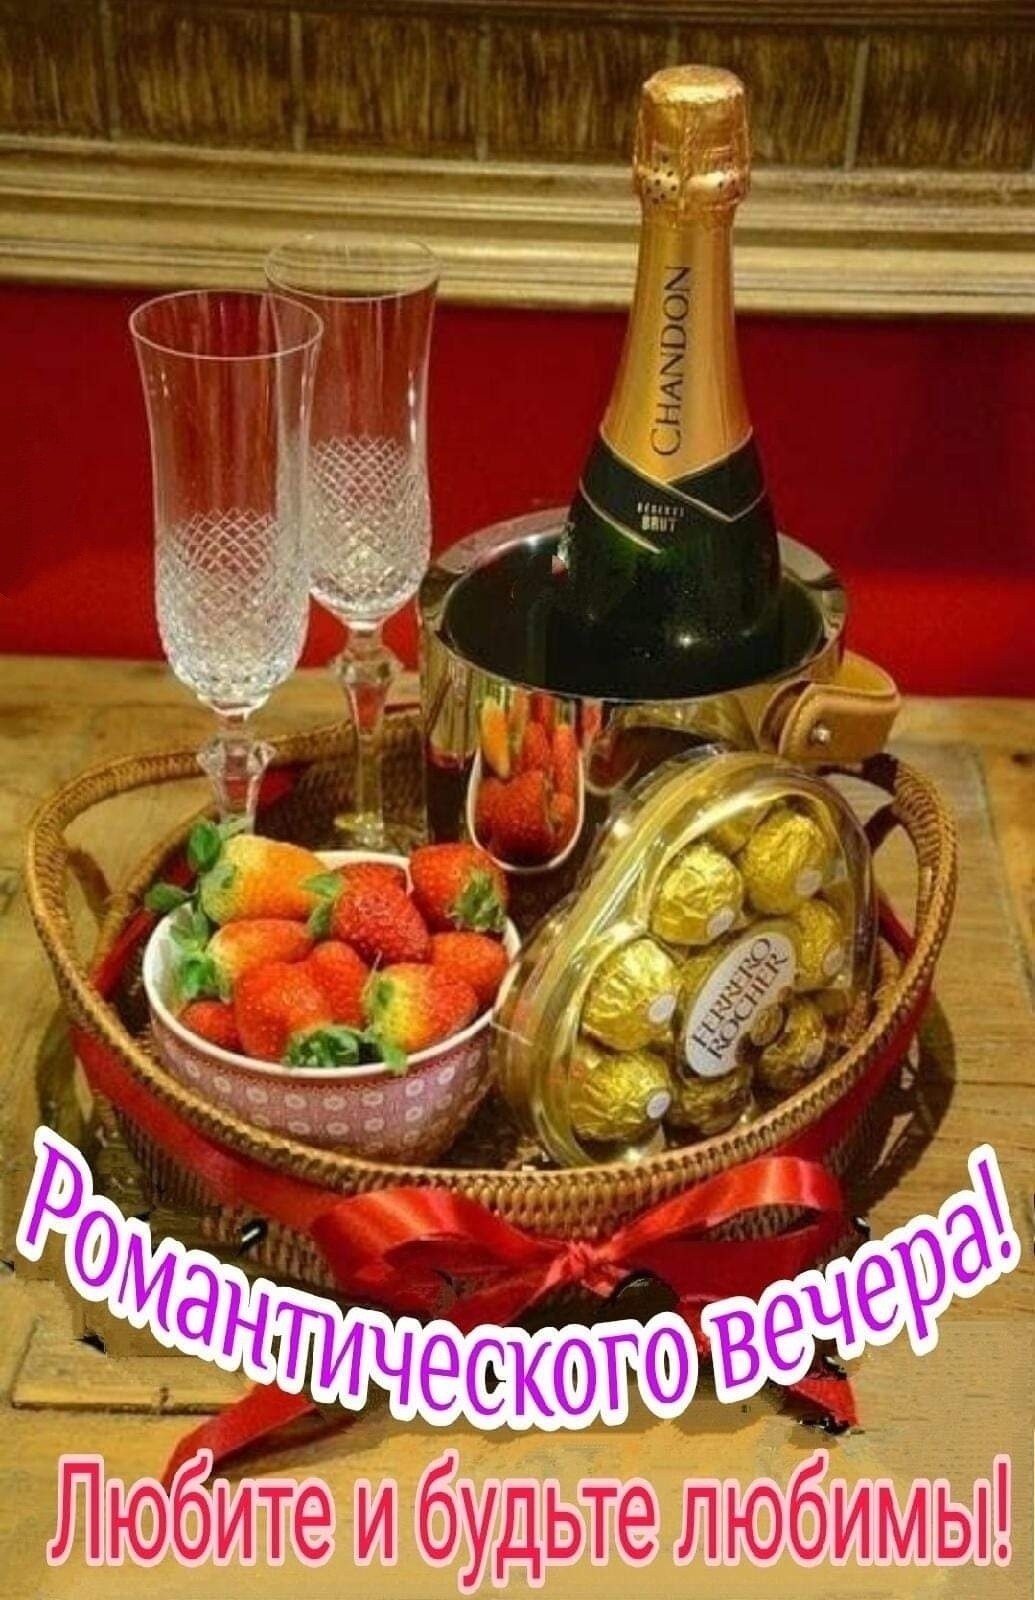 Романтического вечера! - красивые картинки: шампанское, бокалы, фрукты